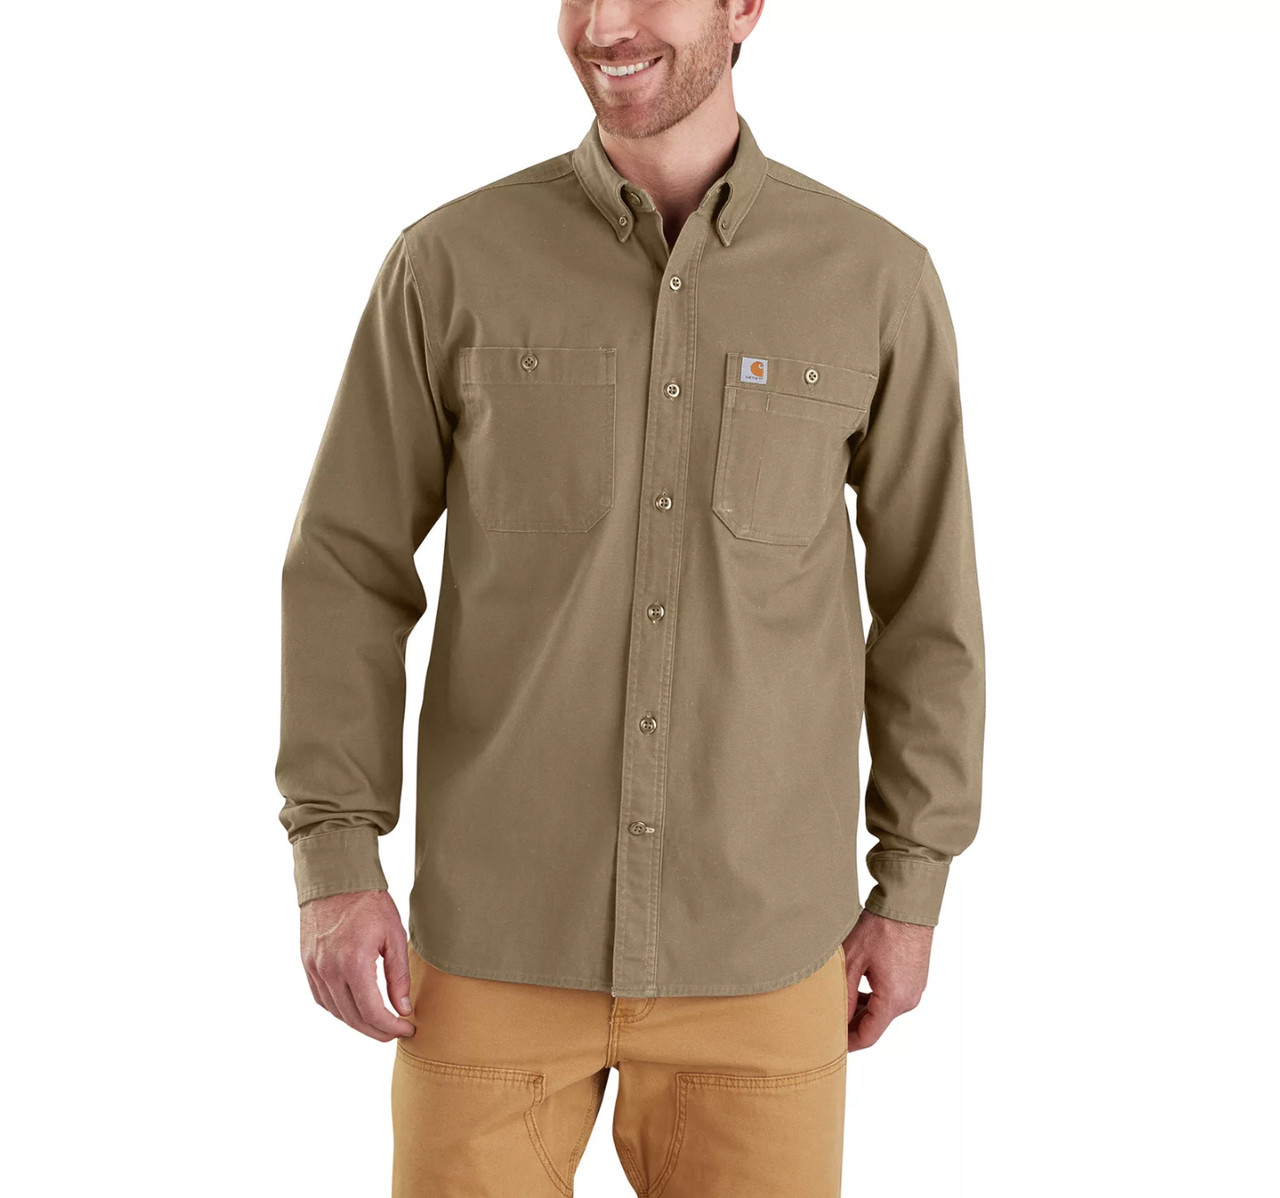 Carhartt Men's Long-Sleeve Rugged Flex Rigby Work Shirt, Navy